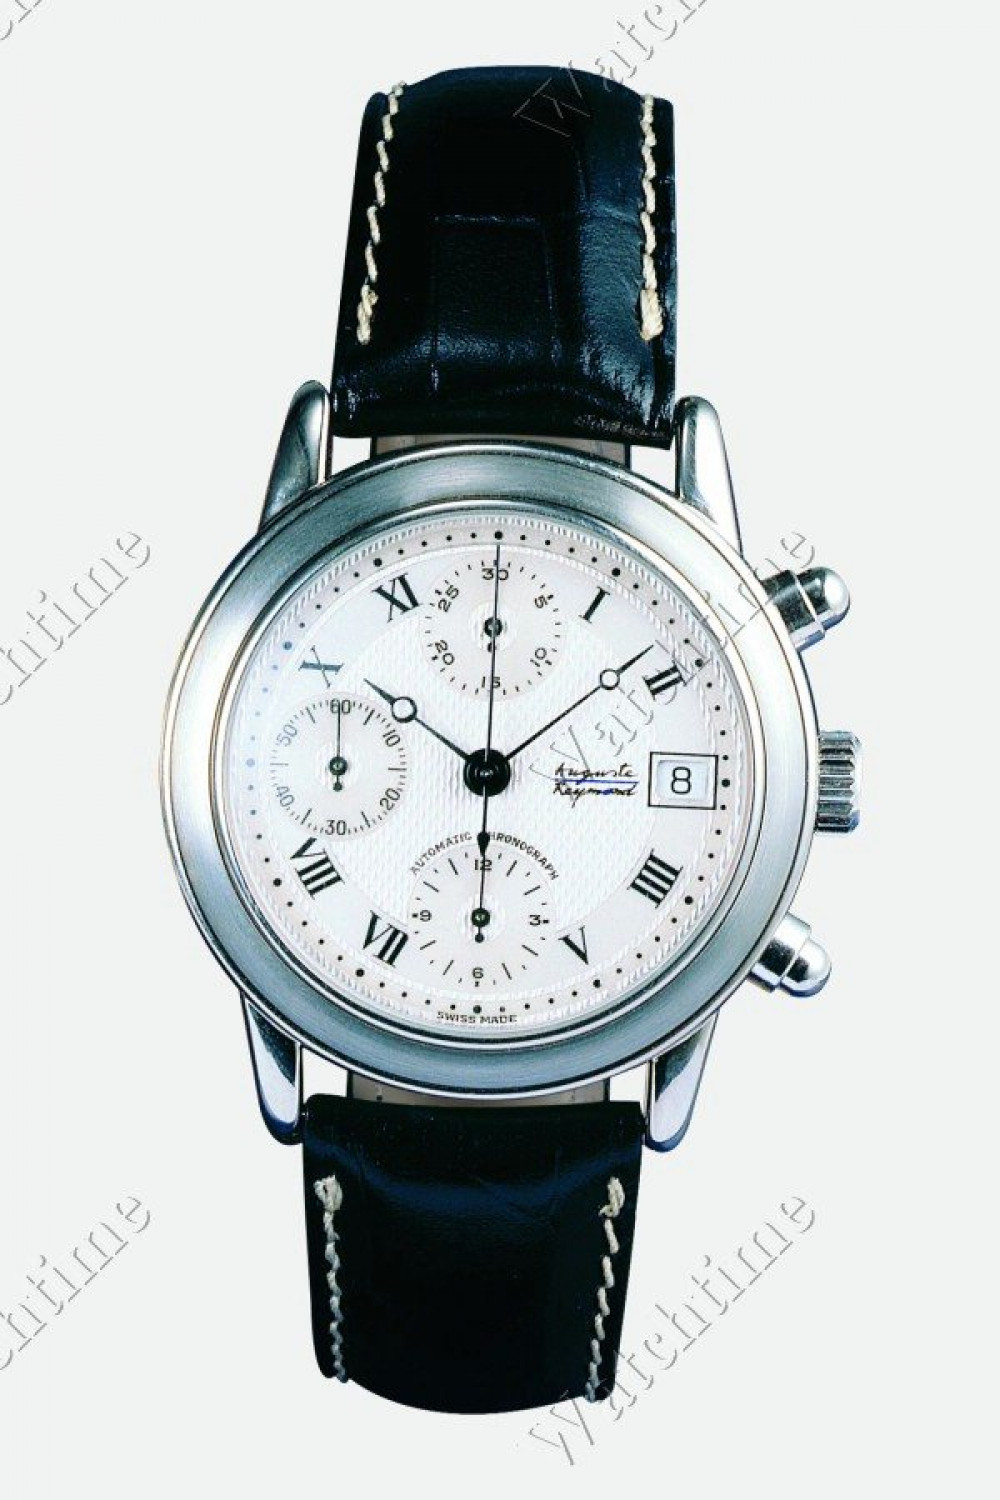 Zegarek firmy Auguste Reymond, model Ragtime Chrono